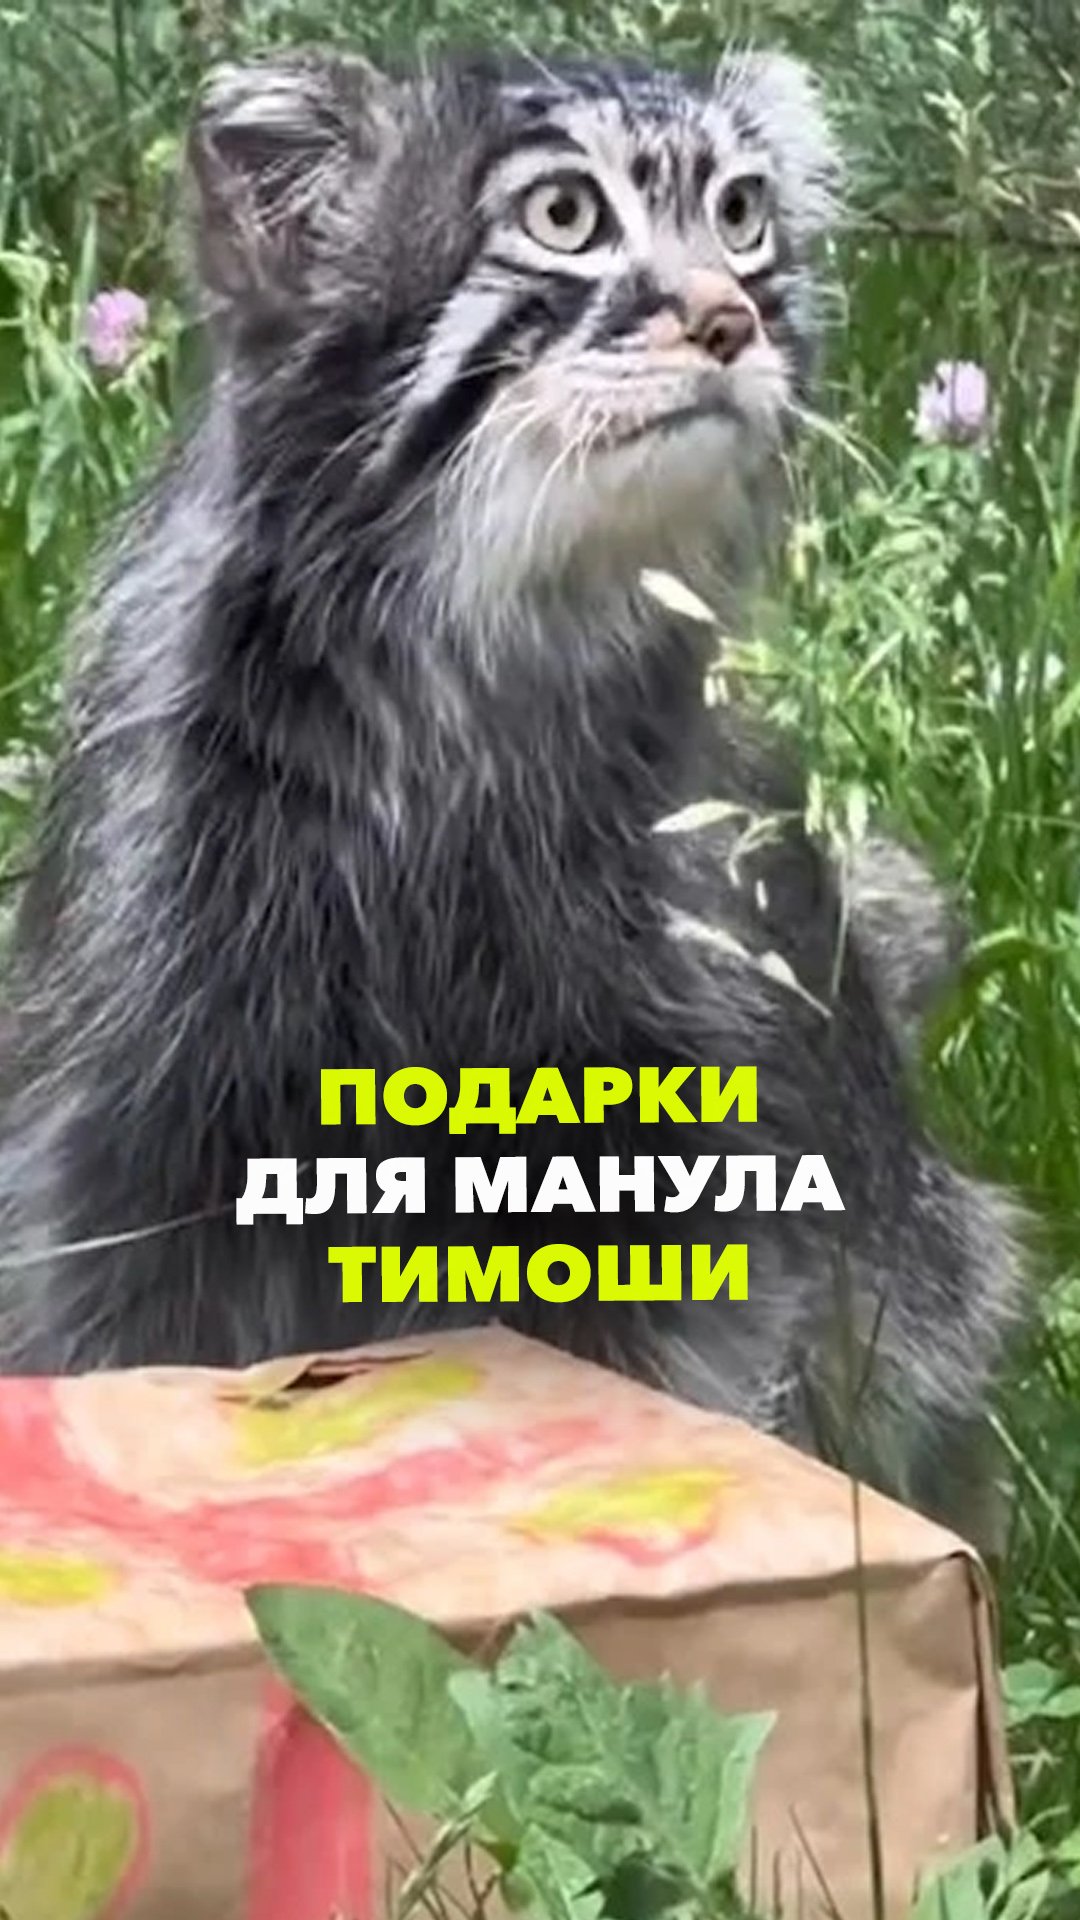 Манул Тимоша отметил День рождения в Московском зоопарке - что подарили?